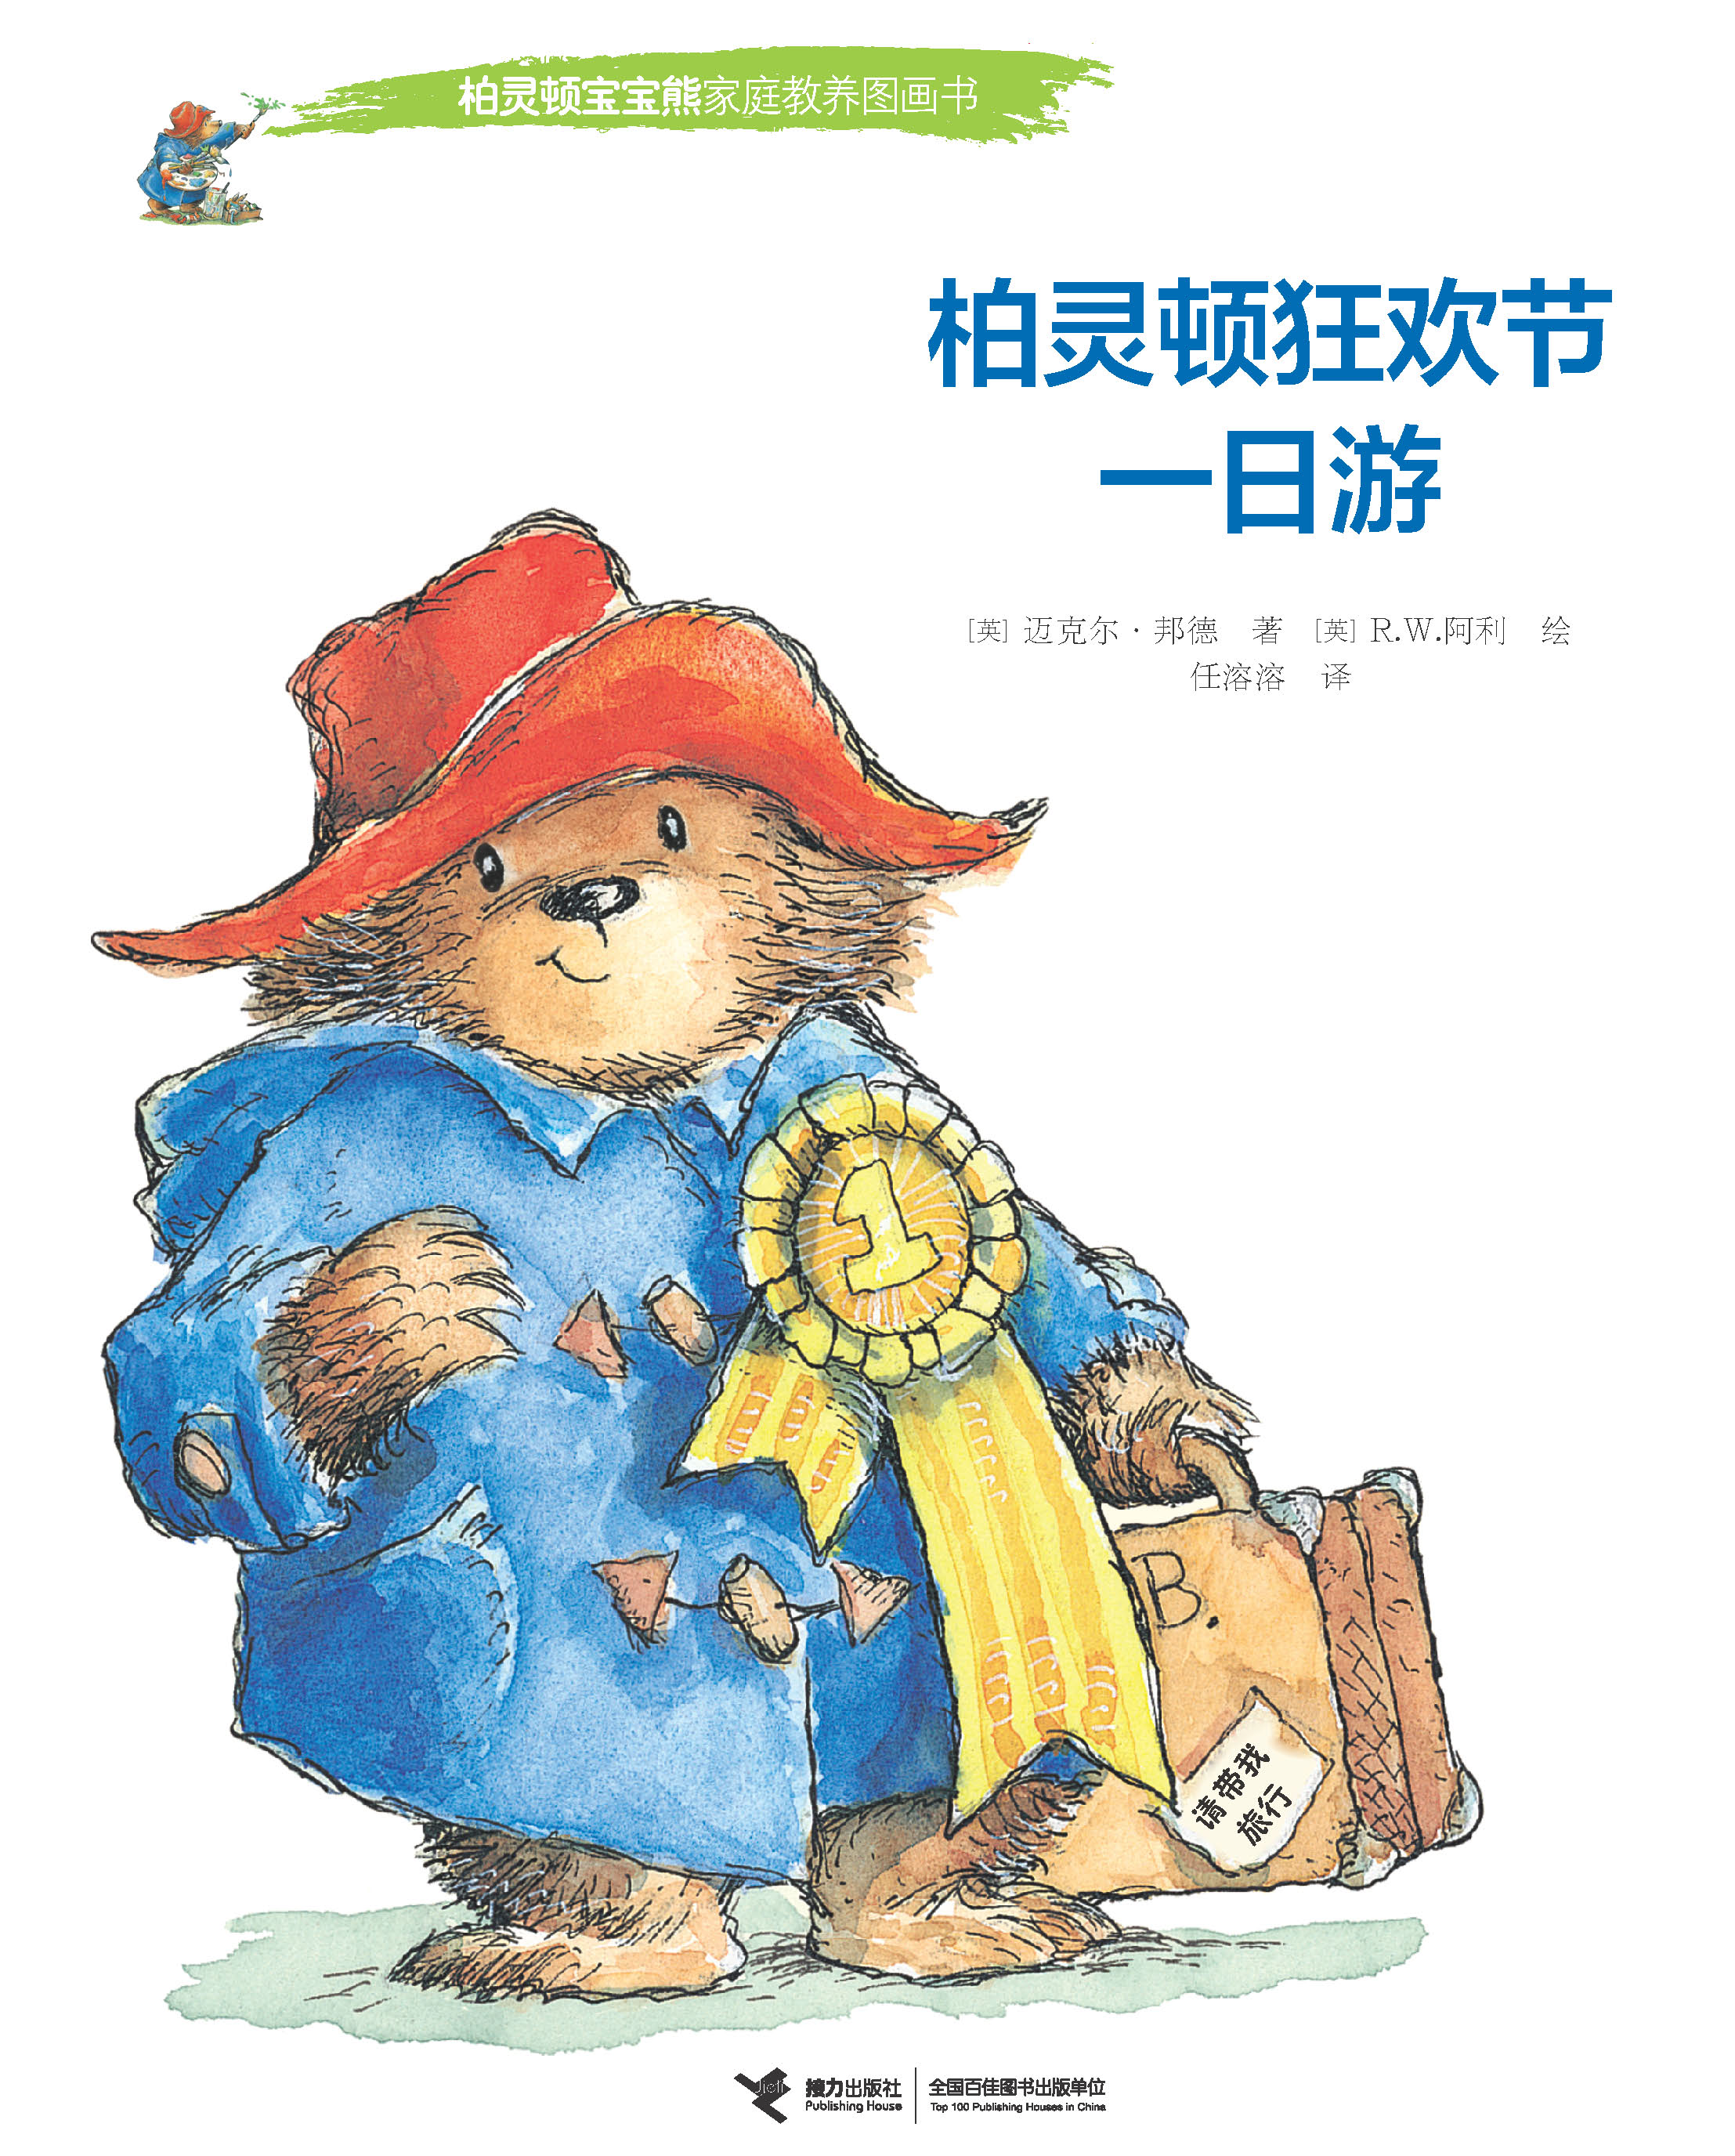 柏灵顿宝宝熊家庭教养图画书:柏灵顿狂欢节一日游